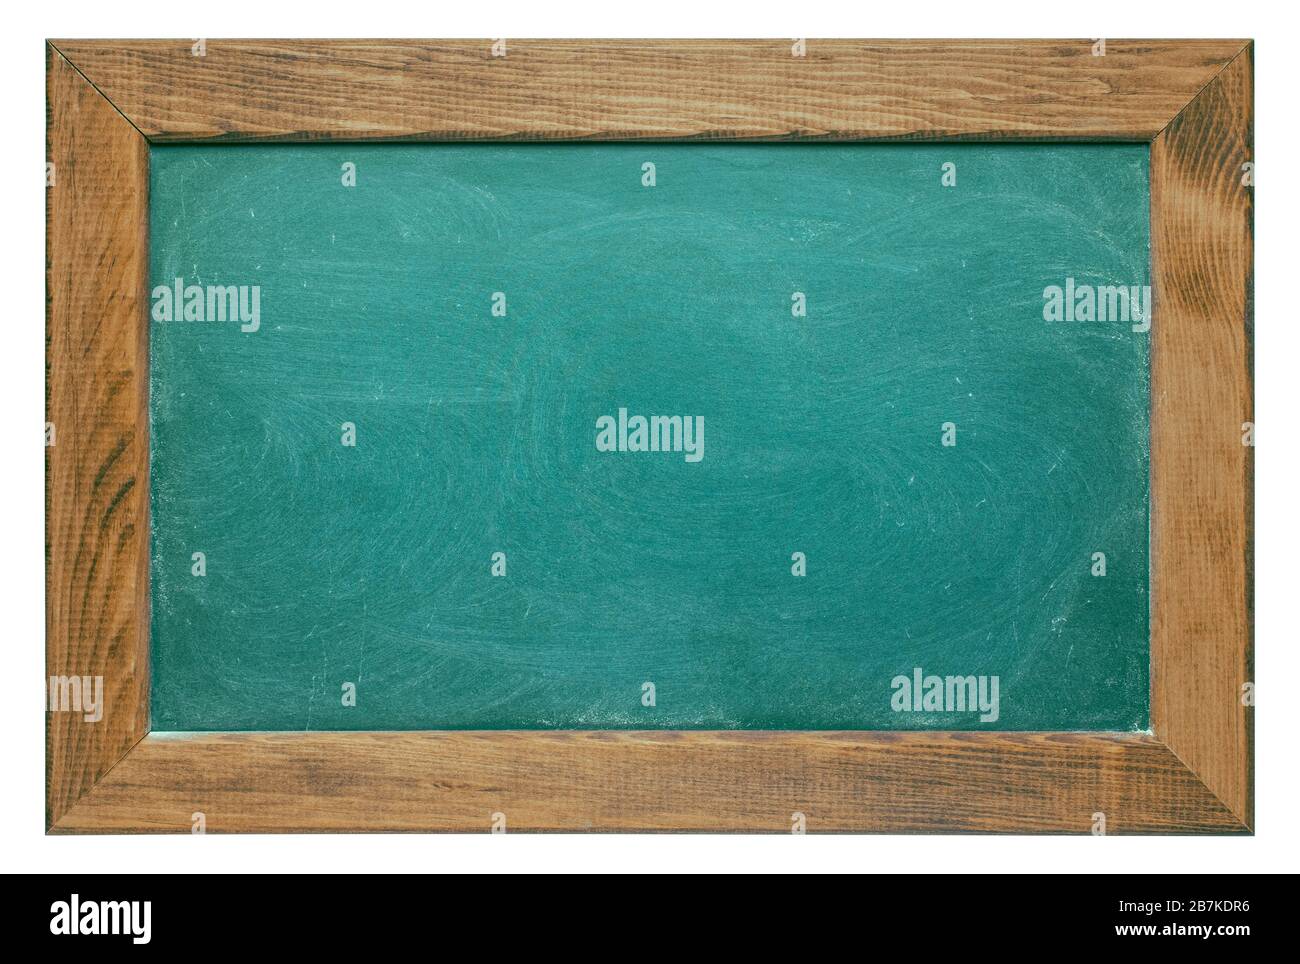 Carton craie vert blanc avec cadre en bois, isolé sur fond blanc. Texture de la surface du tableau de surveillance avec de la poussière de craie granuleuse nette et détaillée. Toilettes vintage Banque D'Images